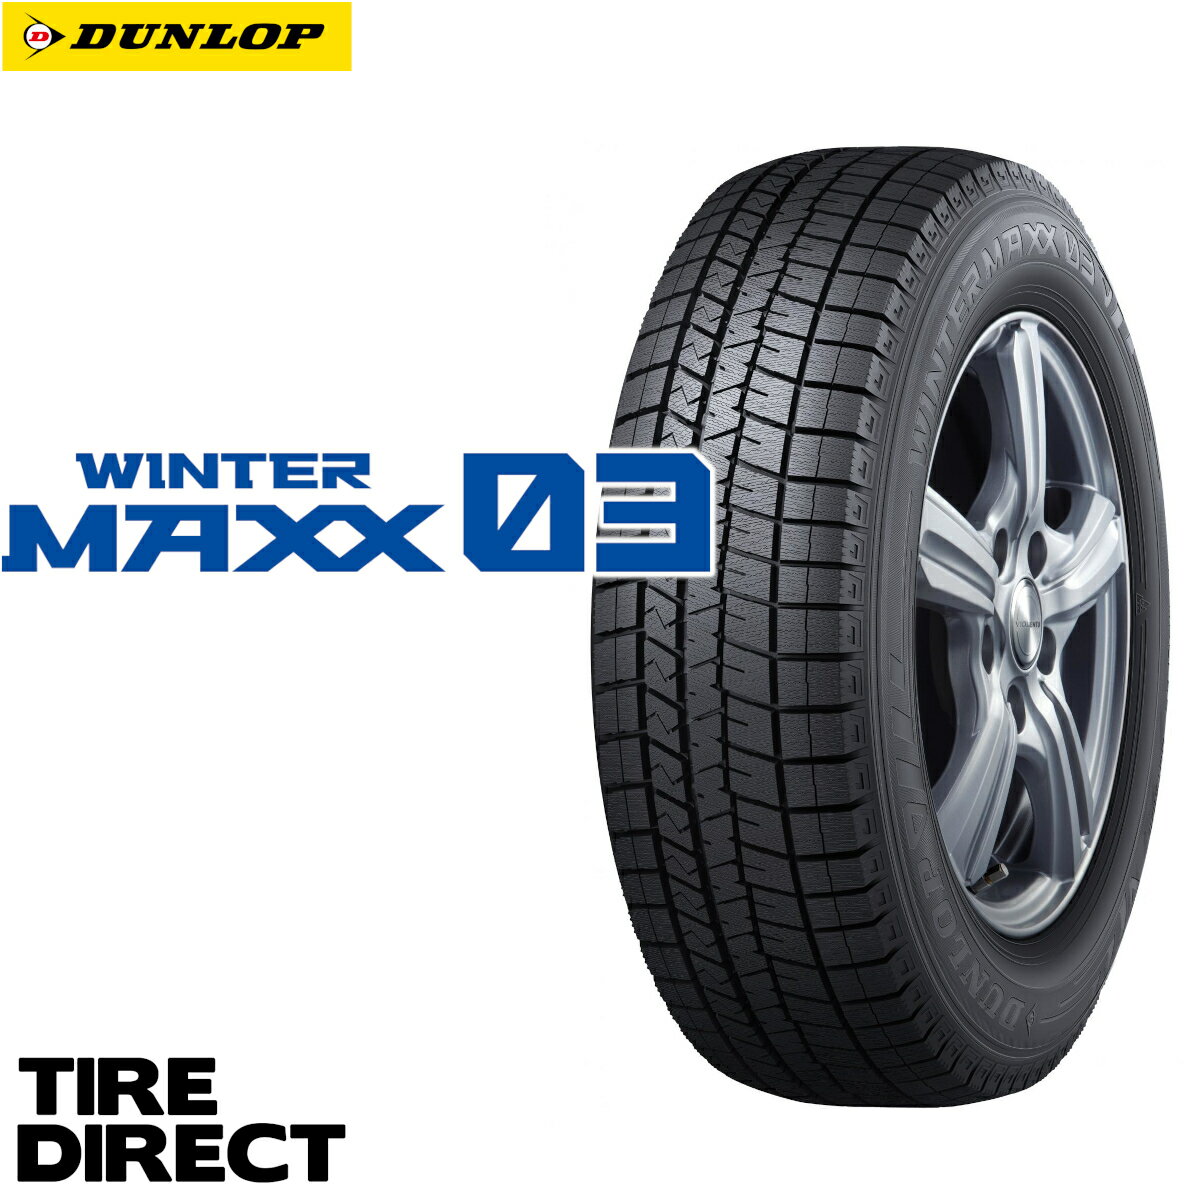 新品 ダンロップ ウインターマックス WM03 235/45R18 94Q DUNLOP WINTER MAXX ウィンターマックス 235/45-18 冬タイヤ スタッドレスタイヤ